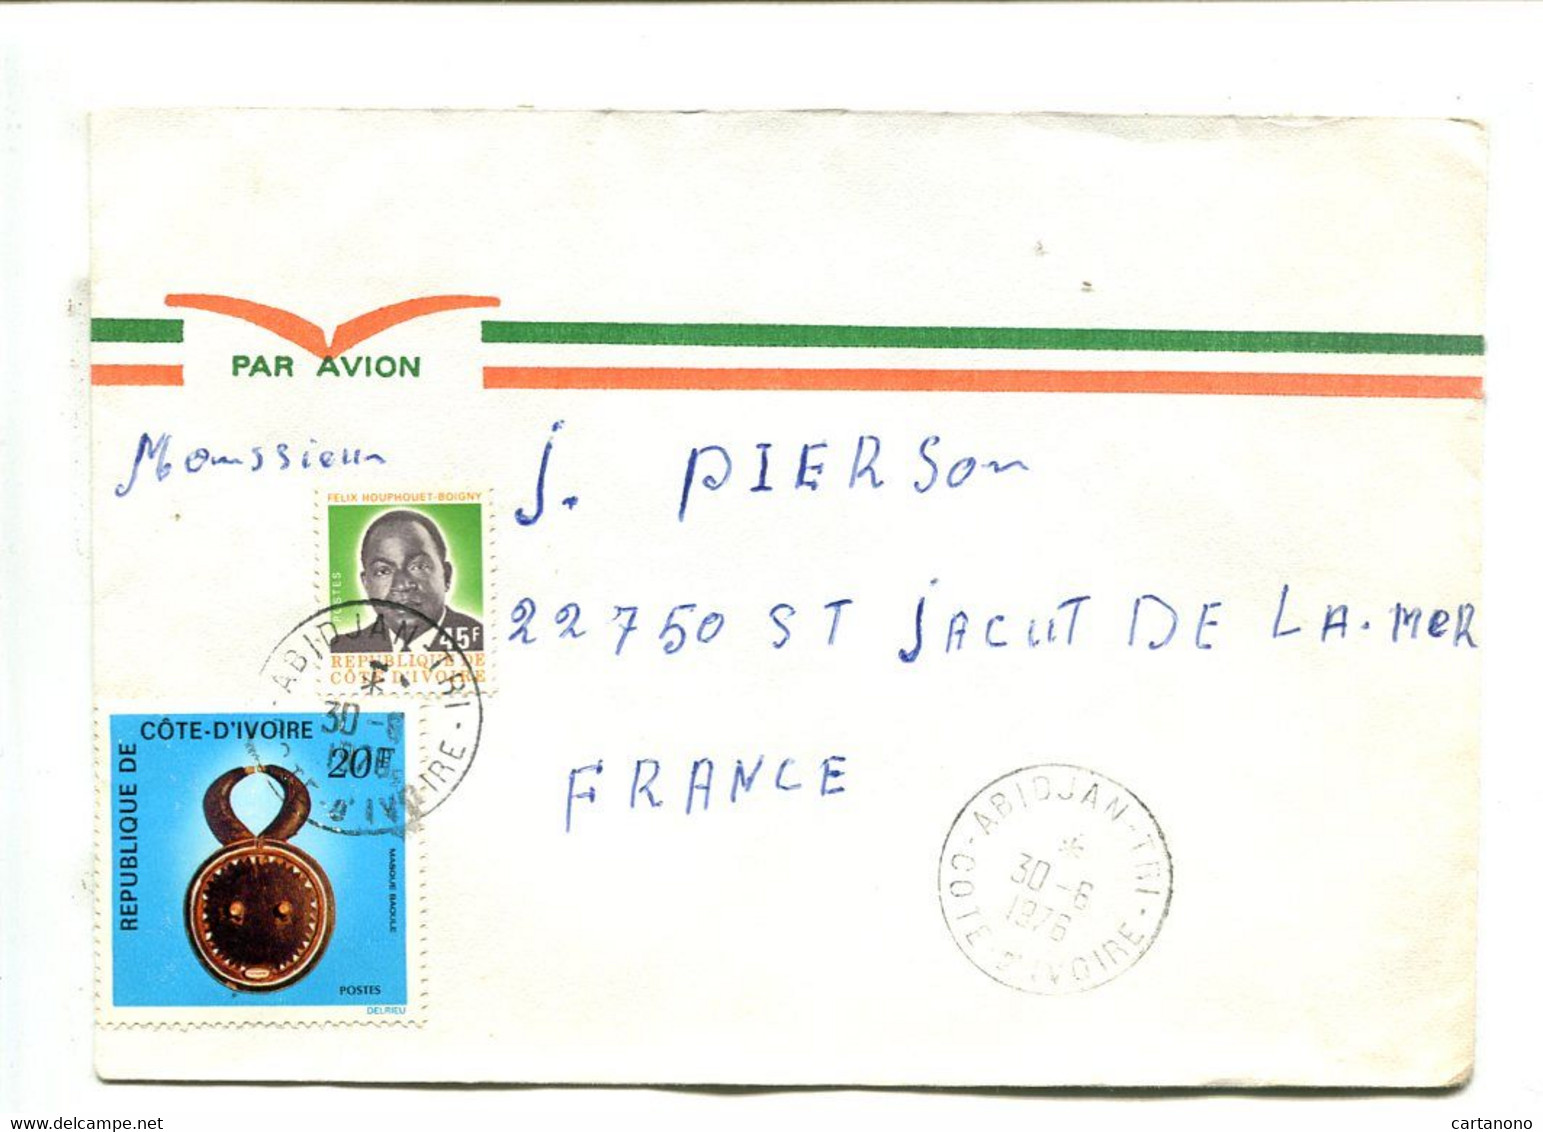 COTE D'IVOIRE Abidjan Tri 1976 - Affranchissement Sur Lettre Par Avion  - - Côte D'Ivoire (1960-...)